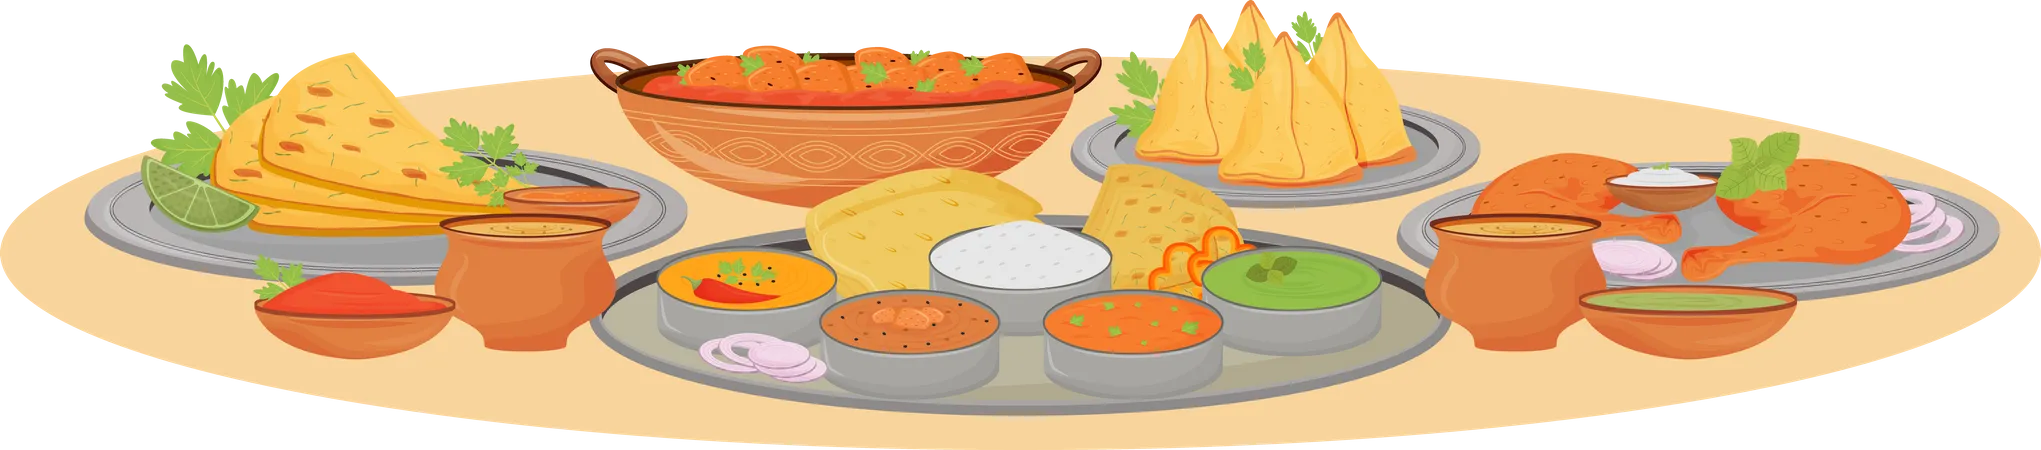 Indian dishes serving Illustration